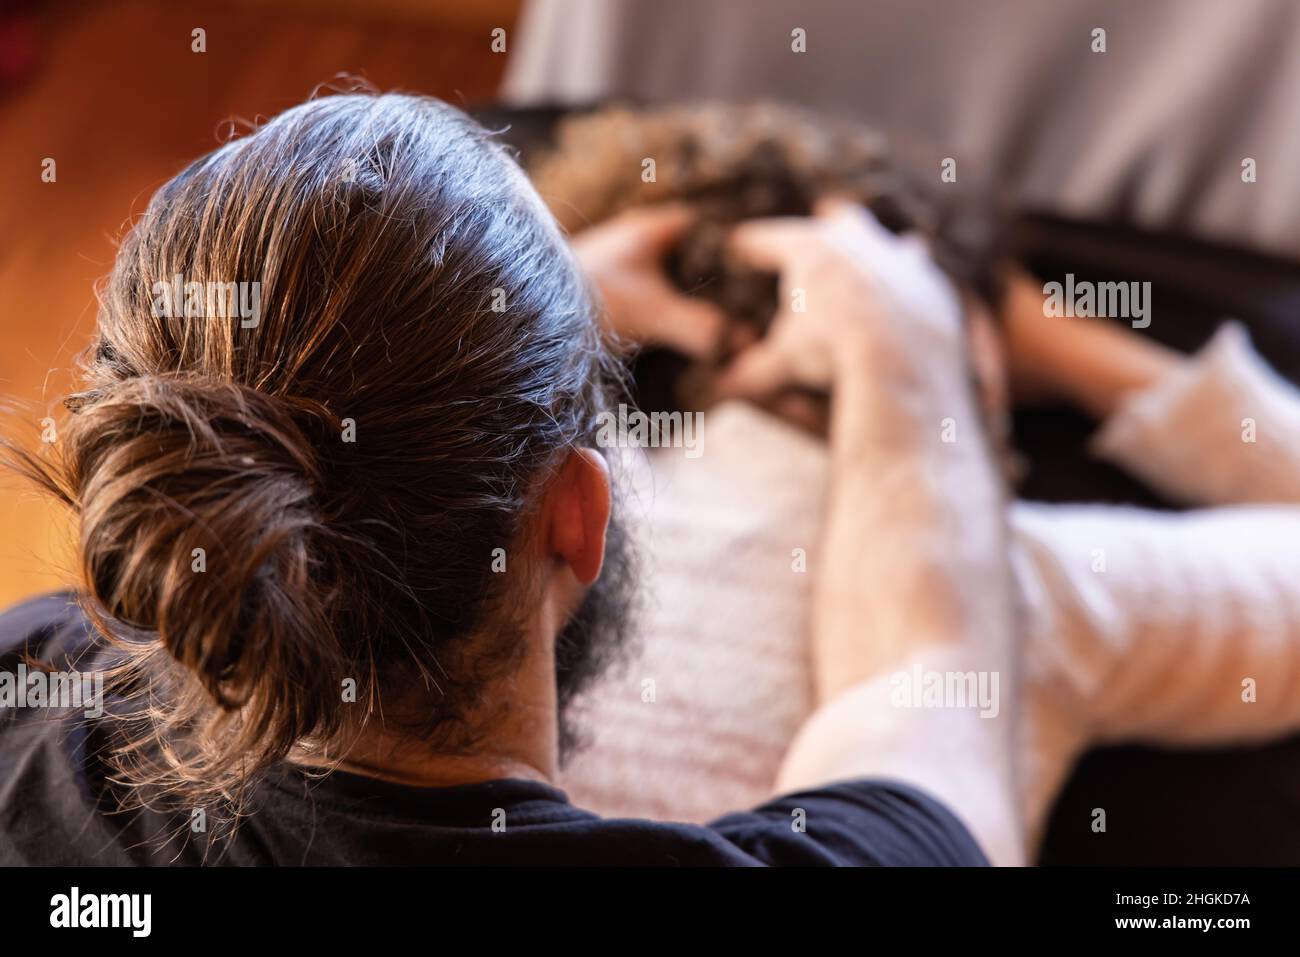 Nahaufnahme auf der Rückseite eines Muskelmassagetherapeuten mit Haarbüsche, der eine Shiatsu-Kopfmassage auf eine Dame gibt, die hinter dem Gesicht verschwommen mit Kopierraum gesehen wird. Stockfoto